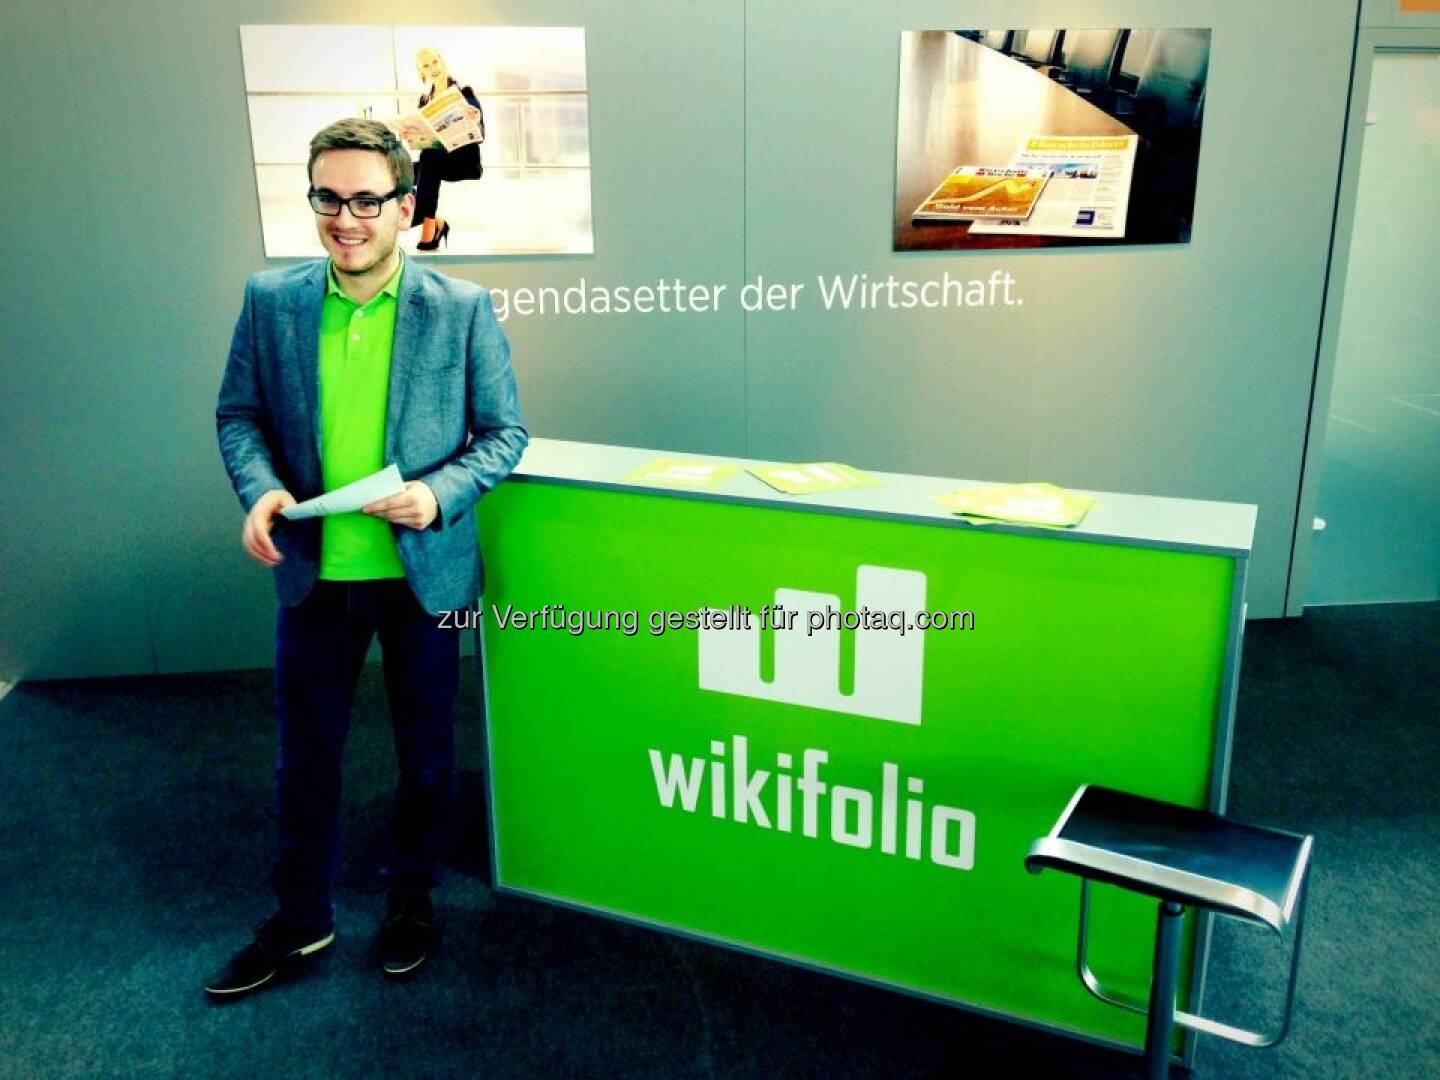 wikifolio - Invest 2013